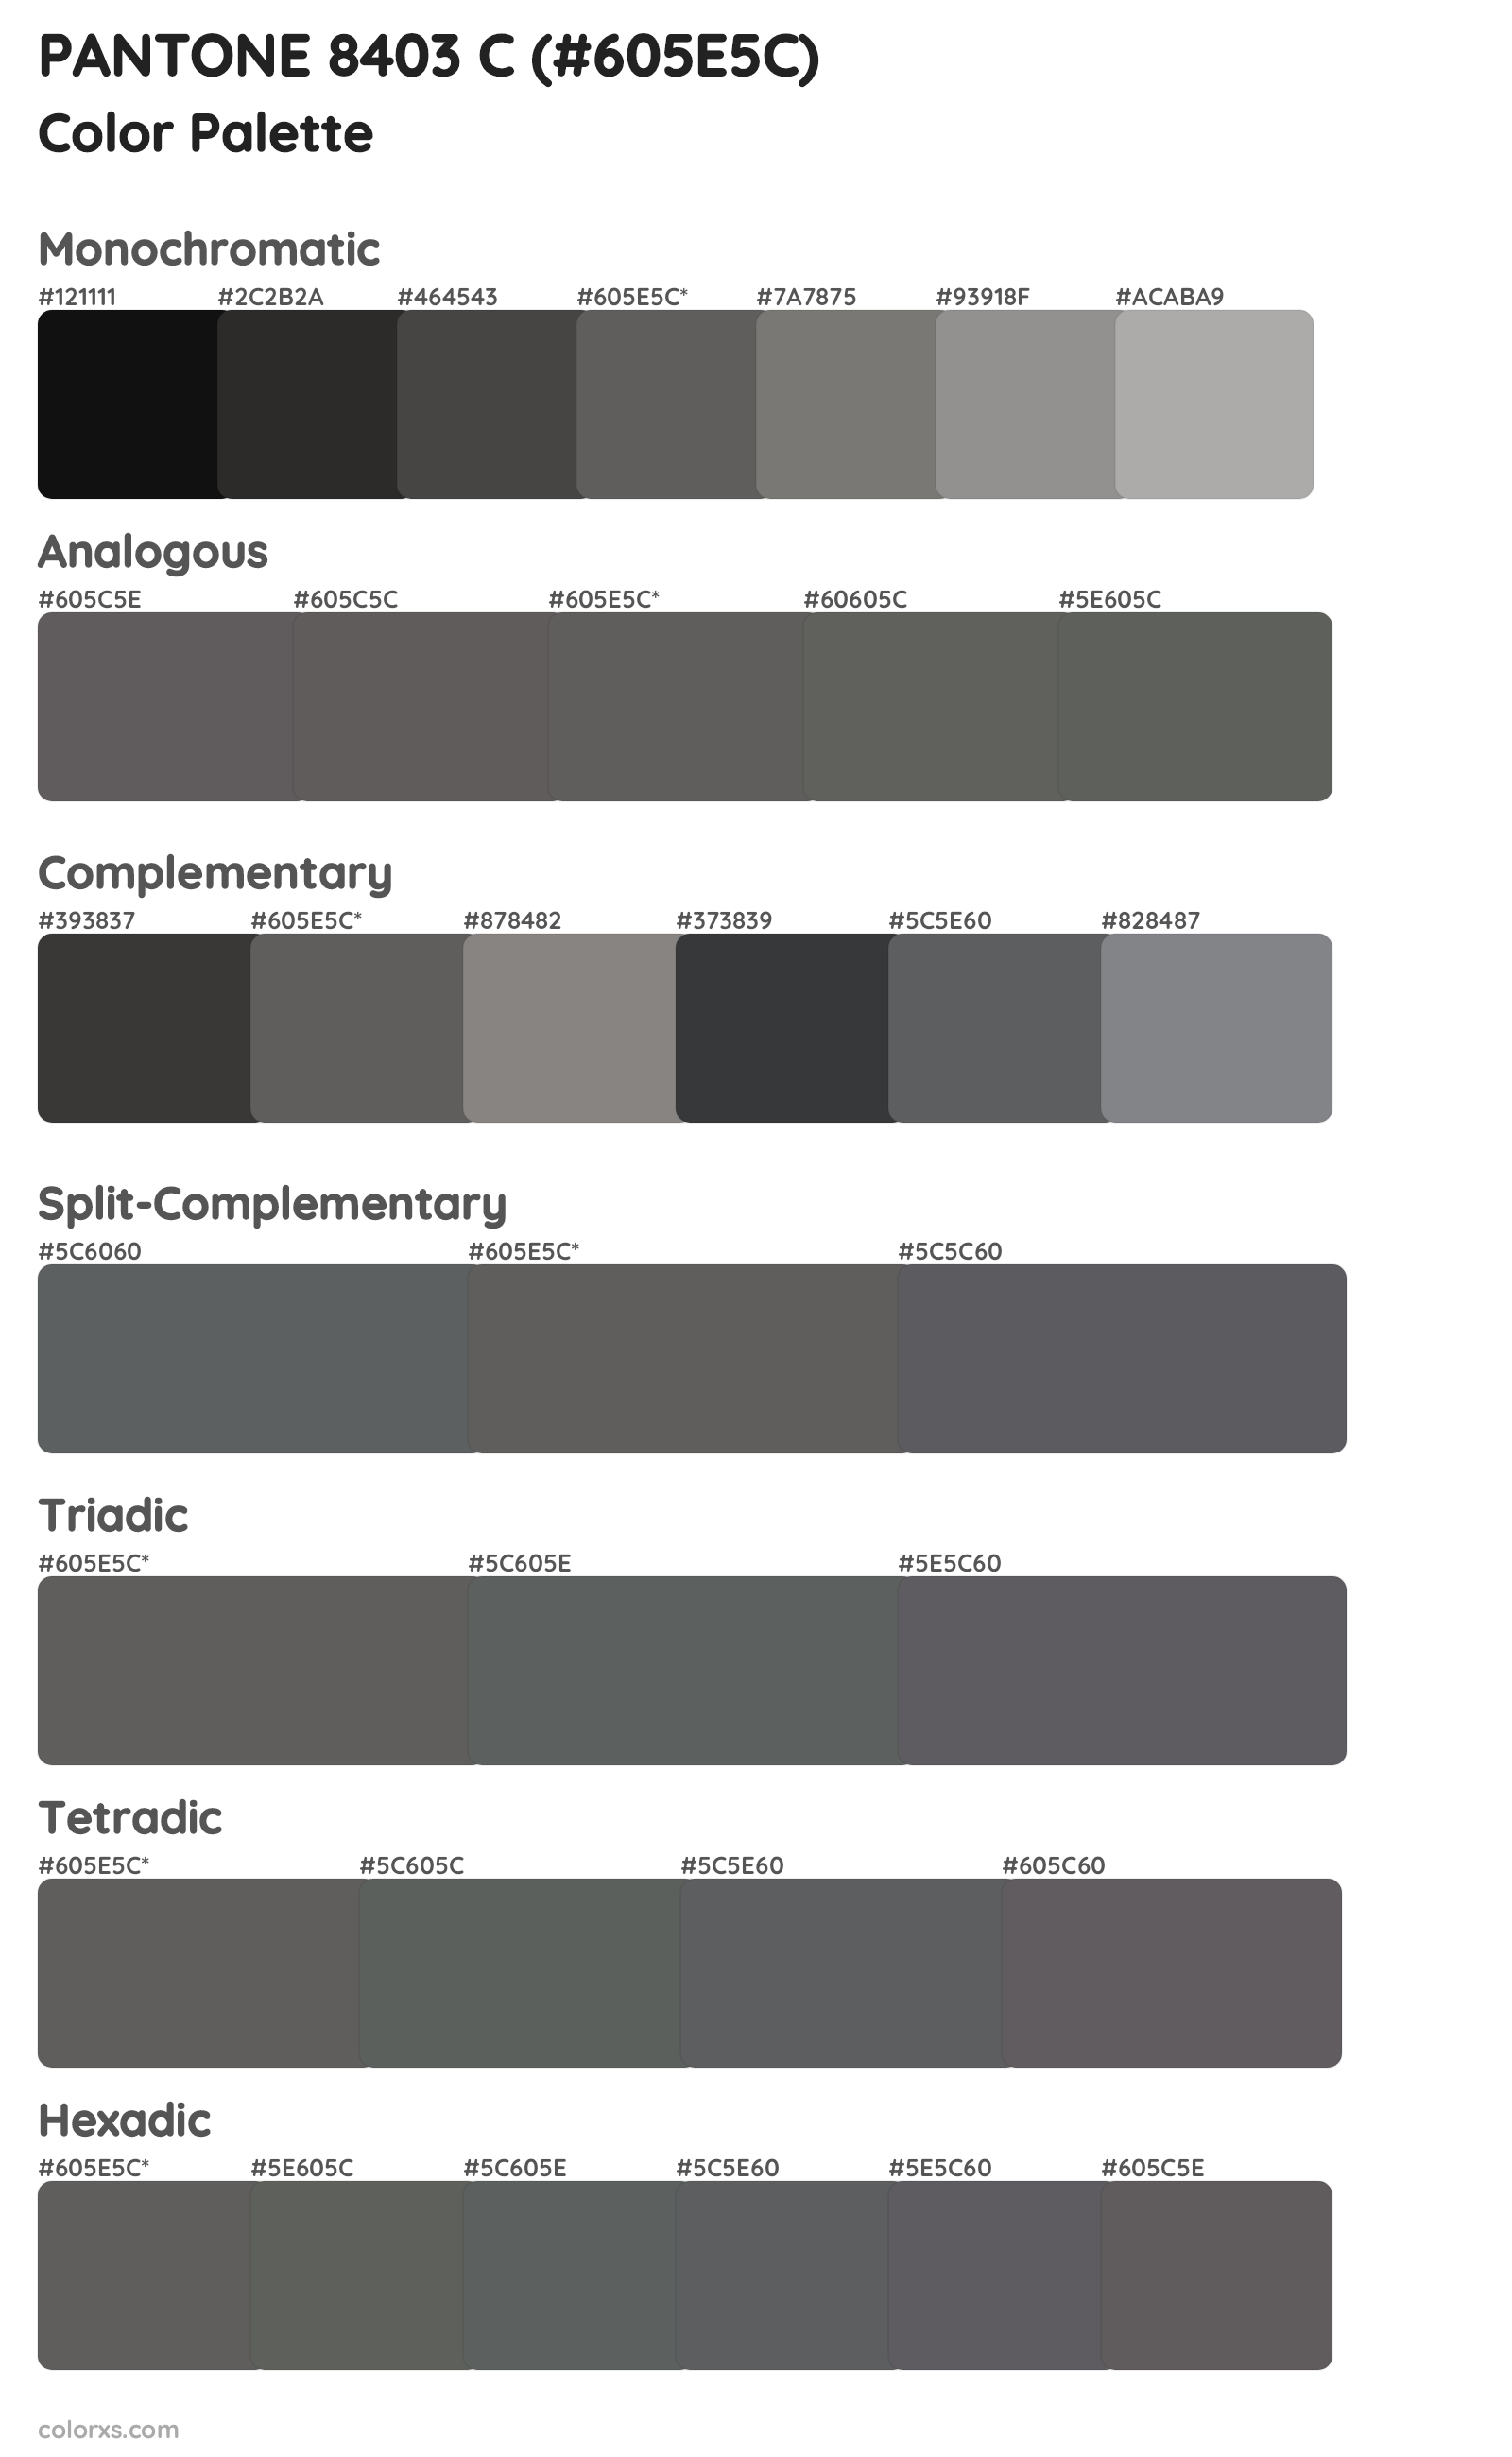 PANTONE 8403 C Color Scheme Palettes